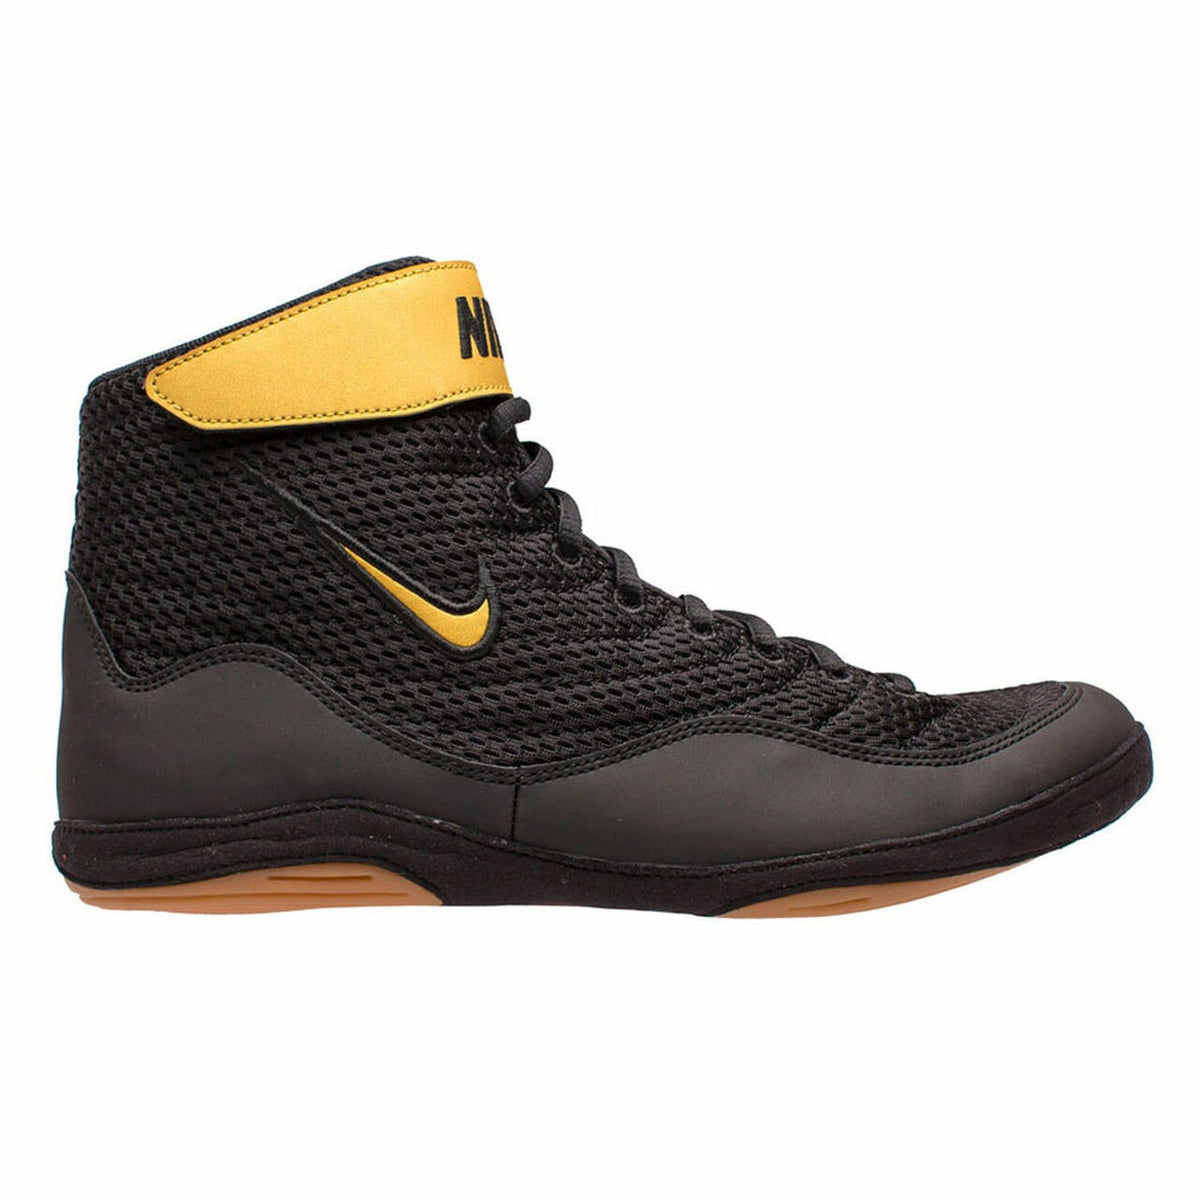 Маратонки за борба Nike Inflic 3. Обувката за напреднали борци за начинаещи и напреднали борци. С високо сцепление на постелката и допълнително велкро на глезена. Nike има страхотно качество и комфорт. Тук в цвят черно/златно.